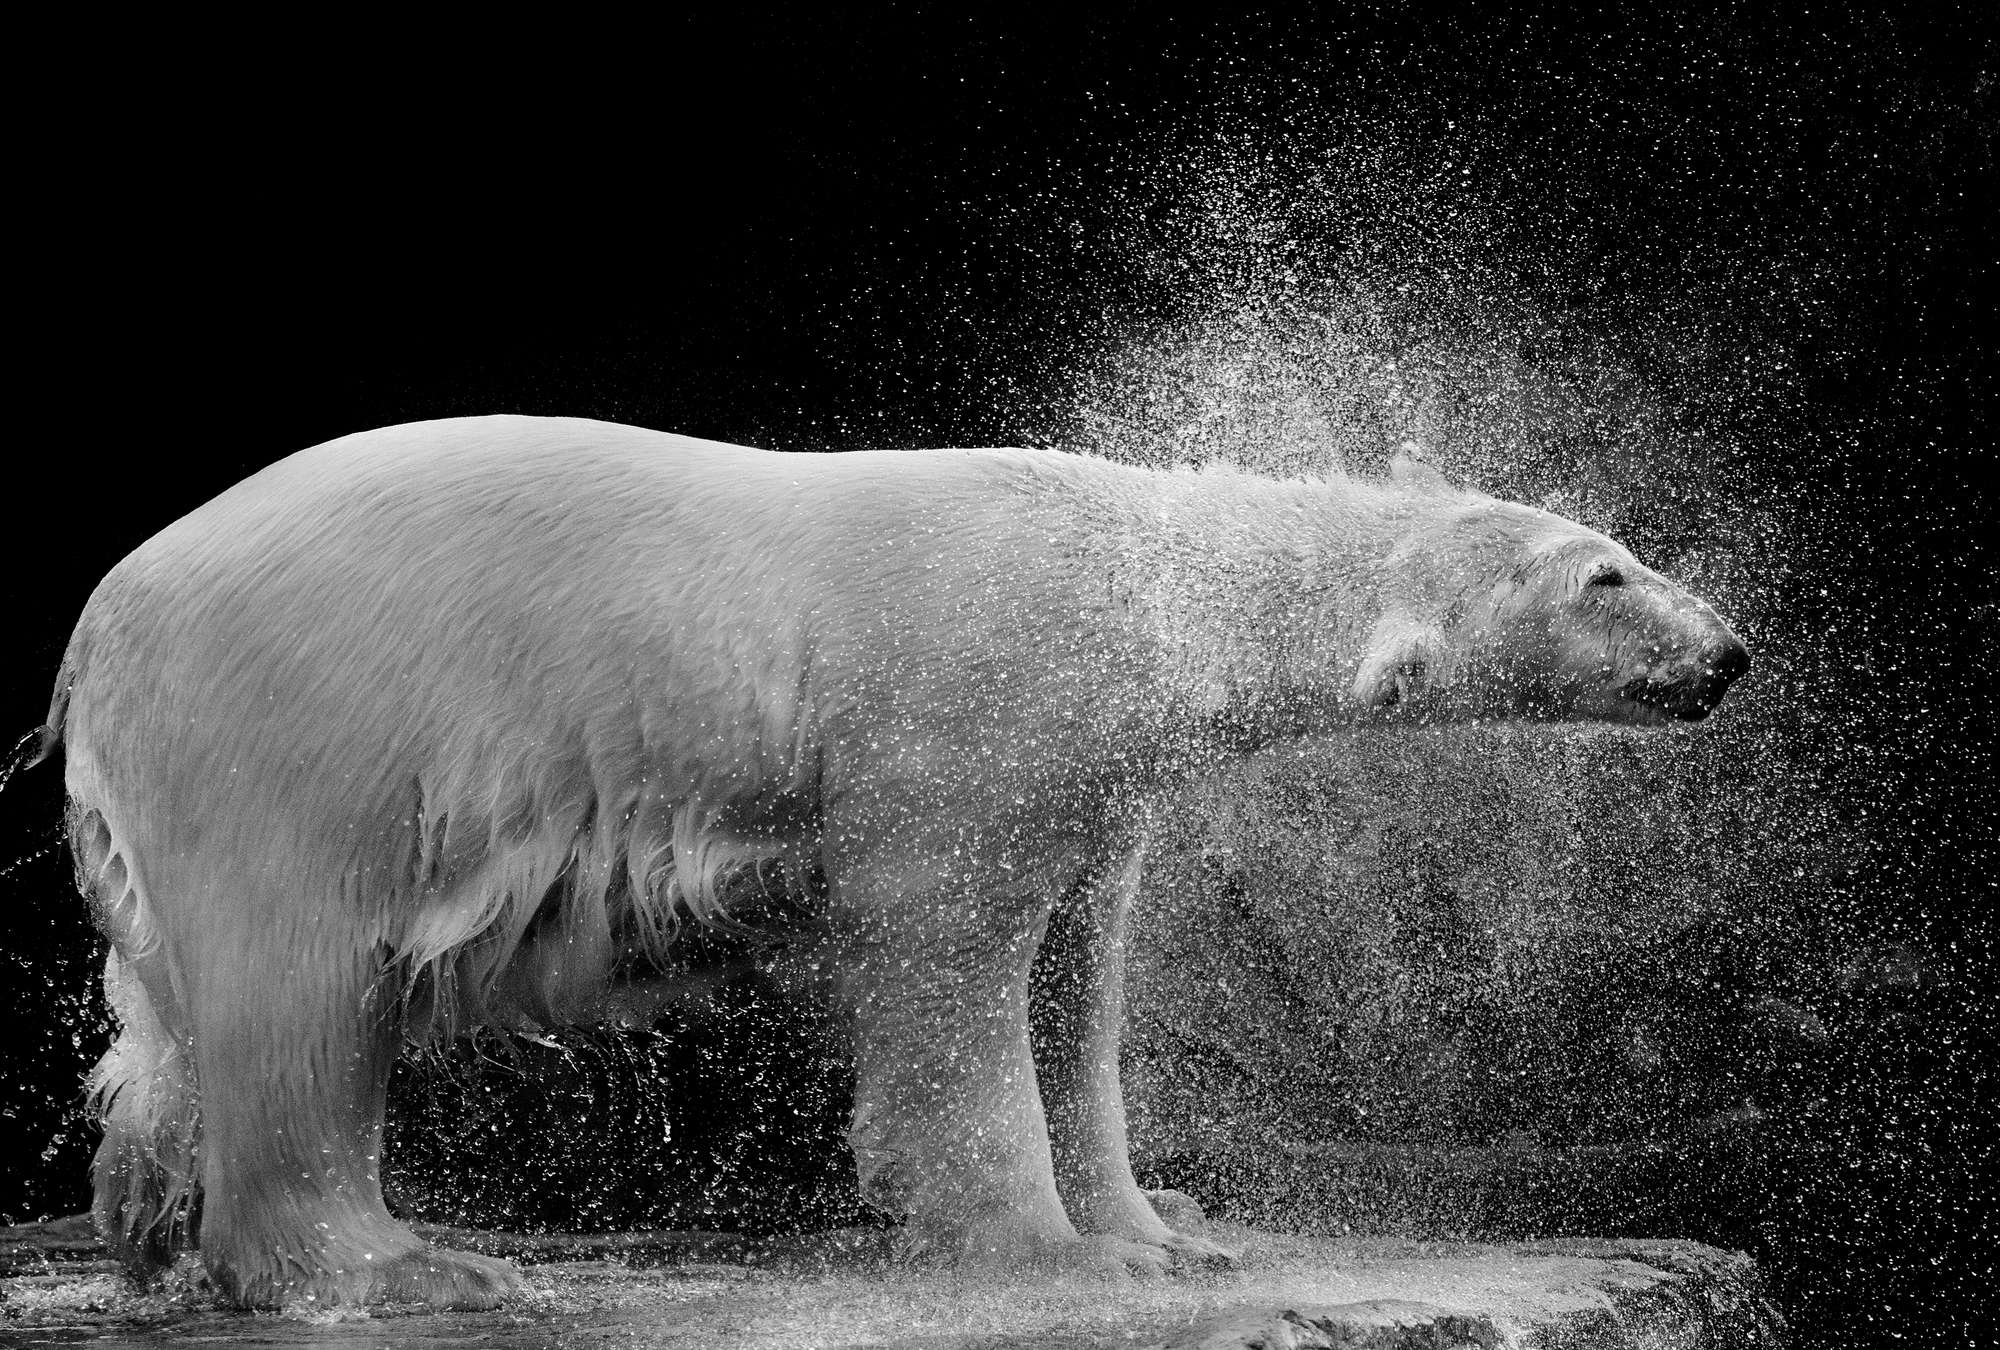             Fototapete nasser Eisbär vor schwarzem Hintergrund
        